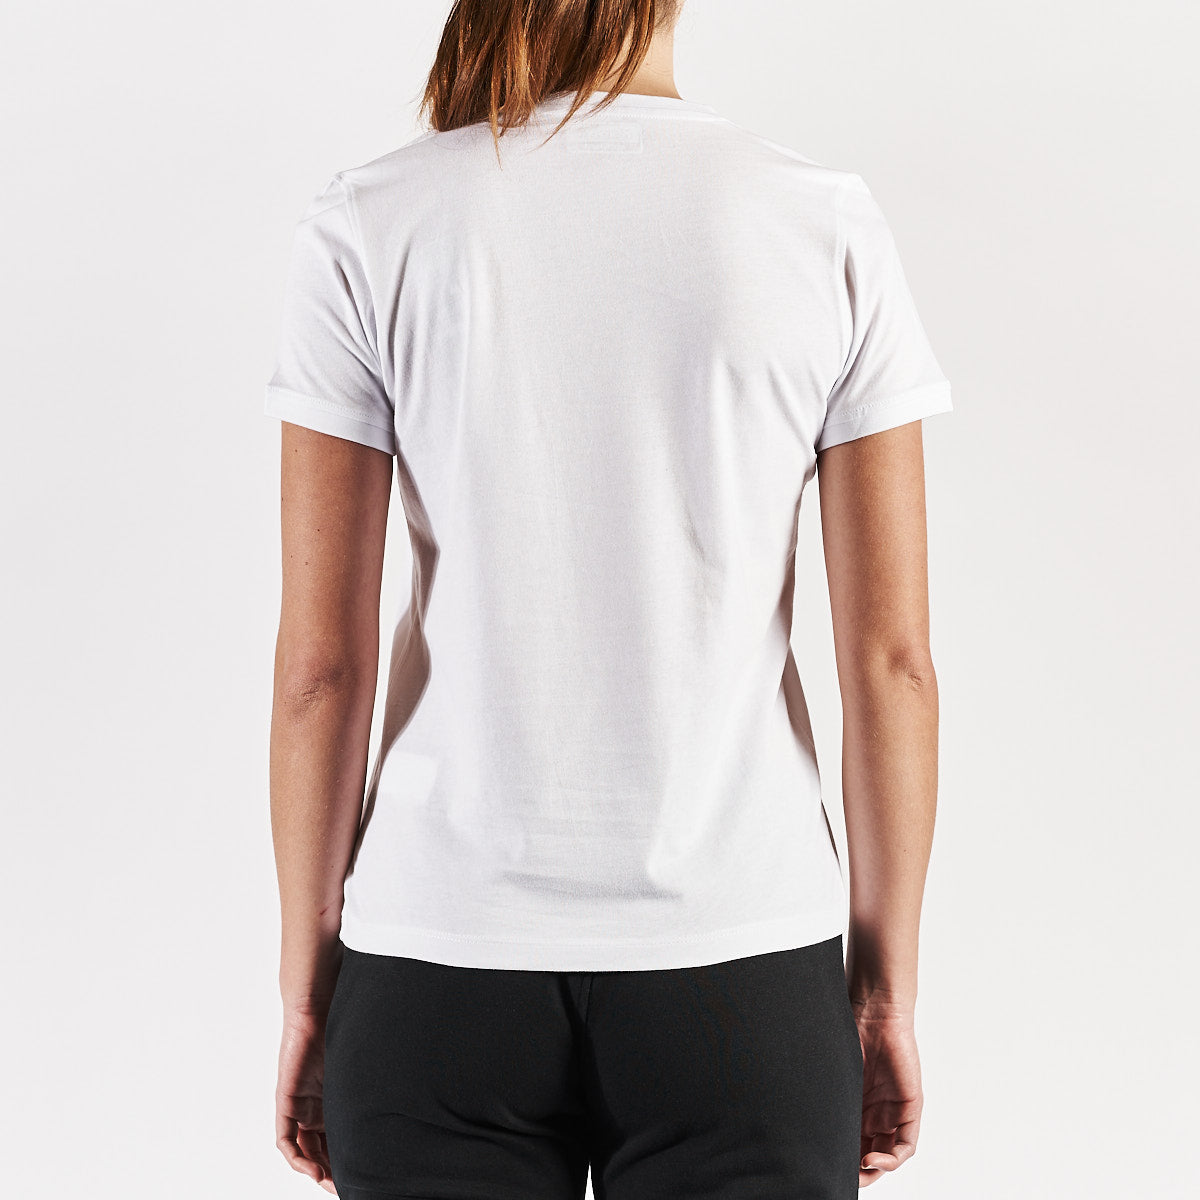 Camiseta Blanca Cabou Mujer - imagen 3